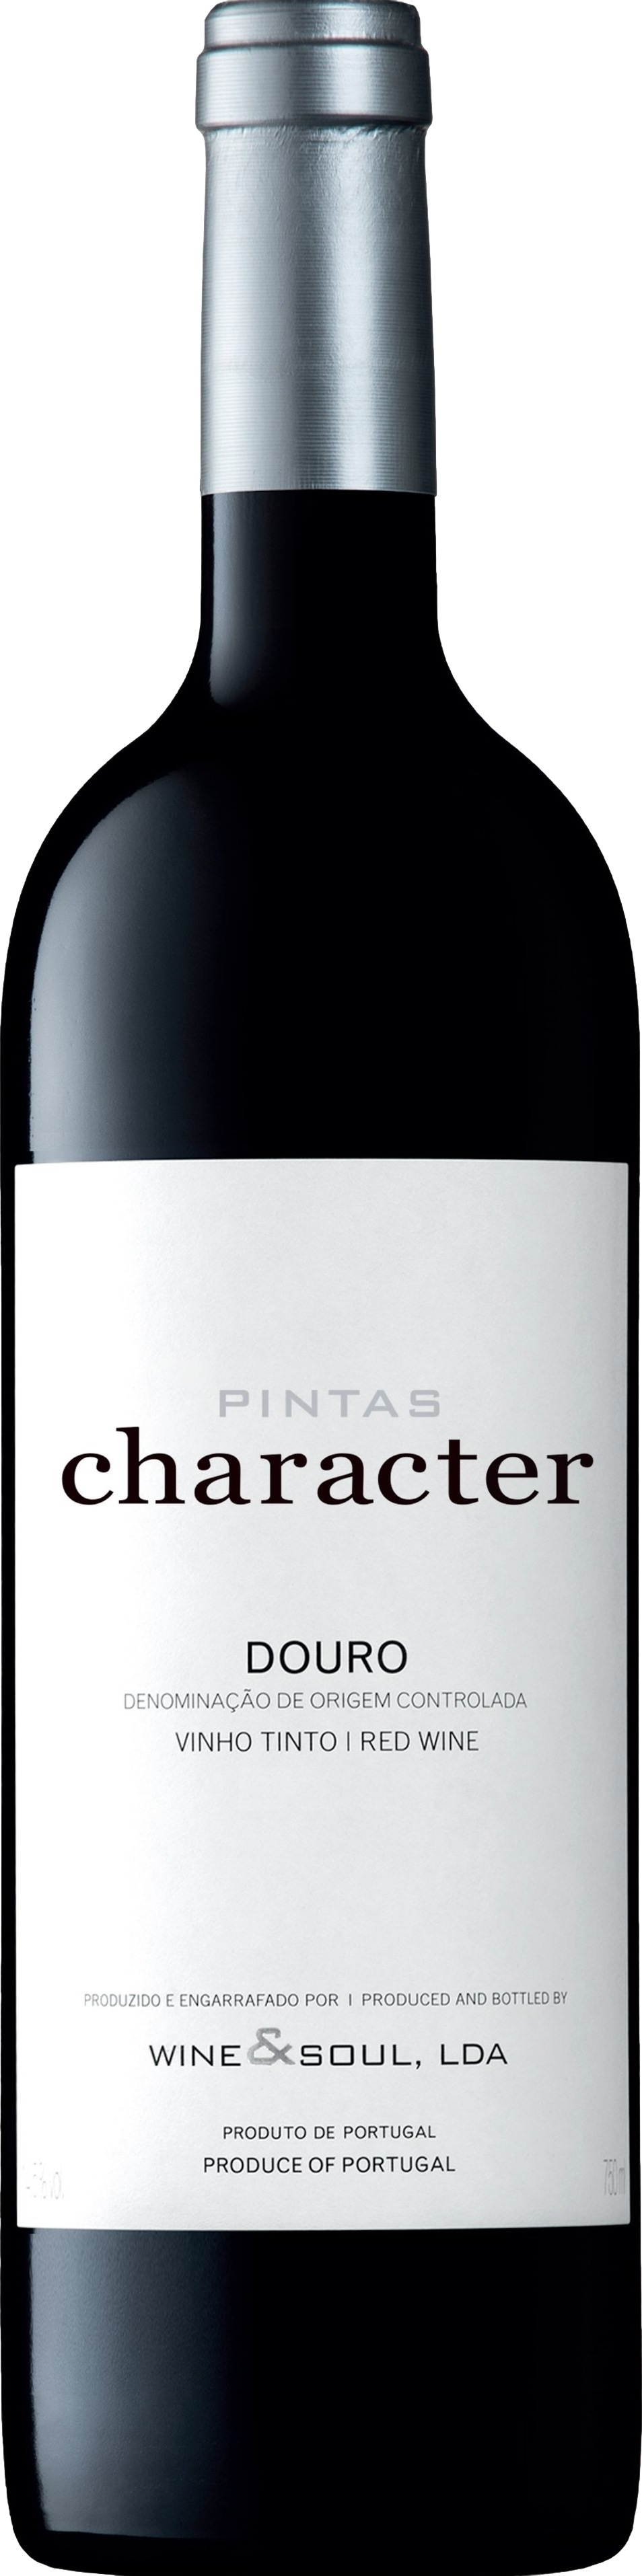 Wine & Soul Pintas Douro Character Tinto 2021